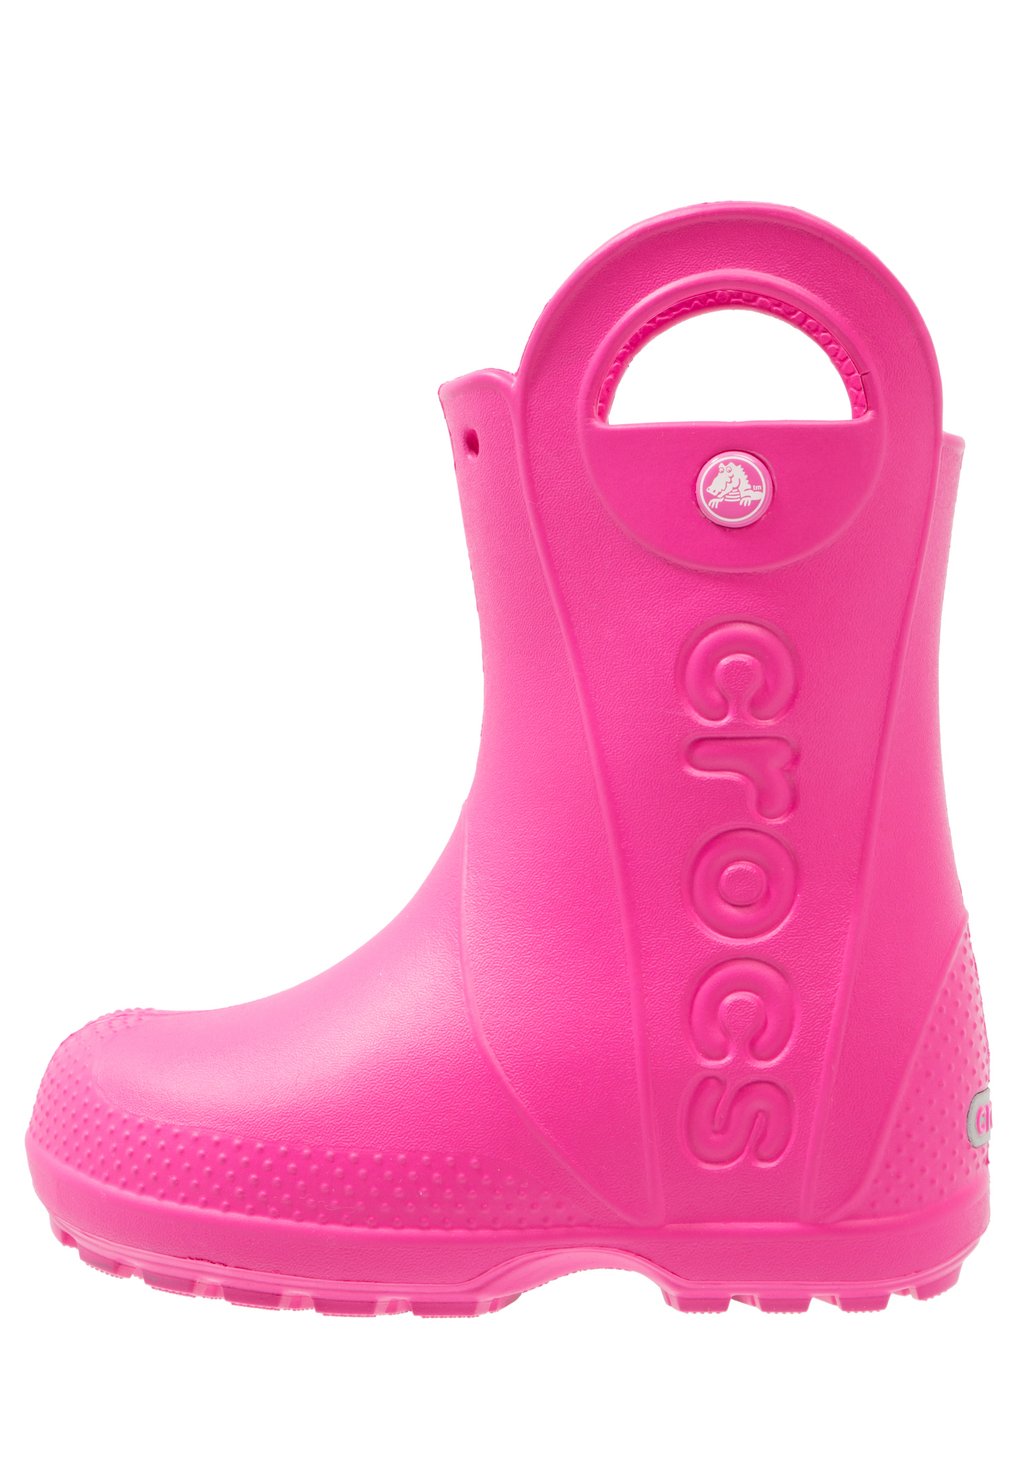 Резиновые сапоги Handle It Rain Boot Kids Crocs, цвет candy pink резиновые сапоги dziecięce handle rain crocs желтый